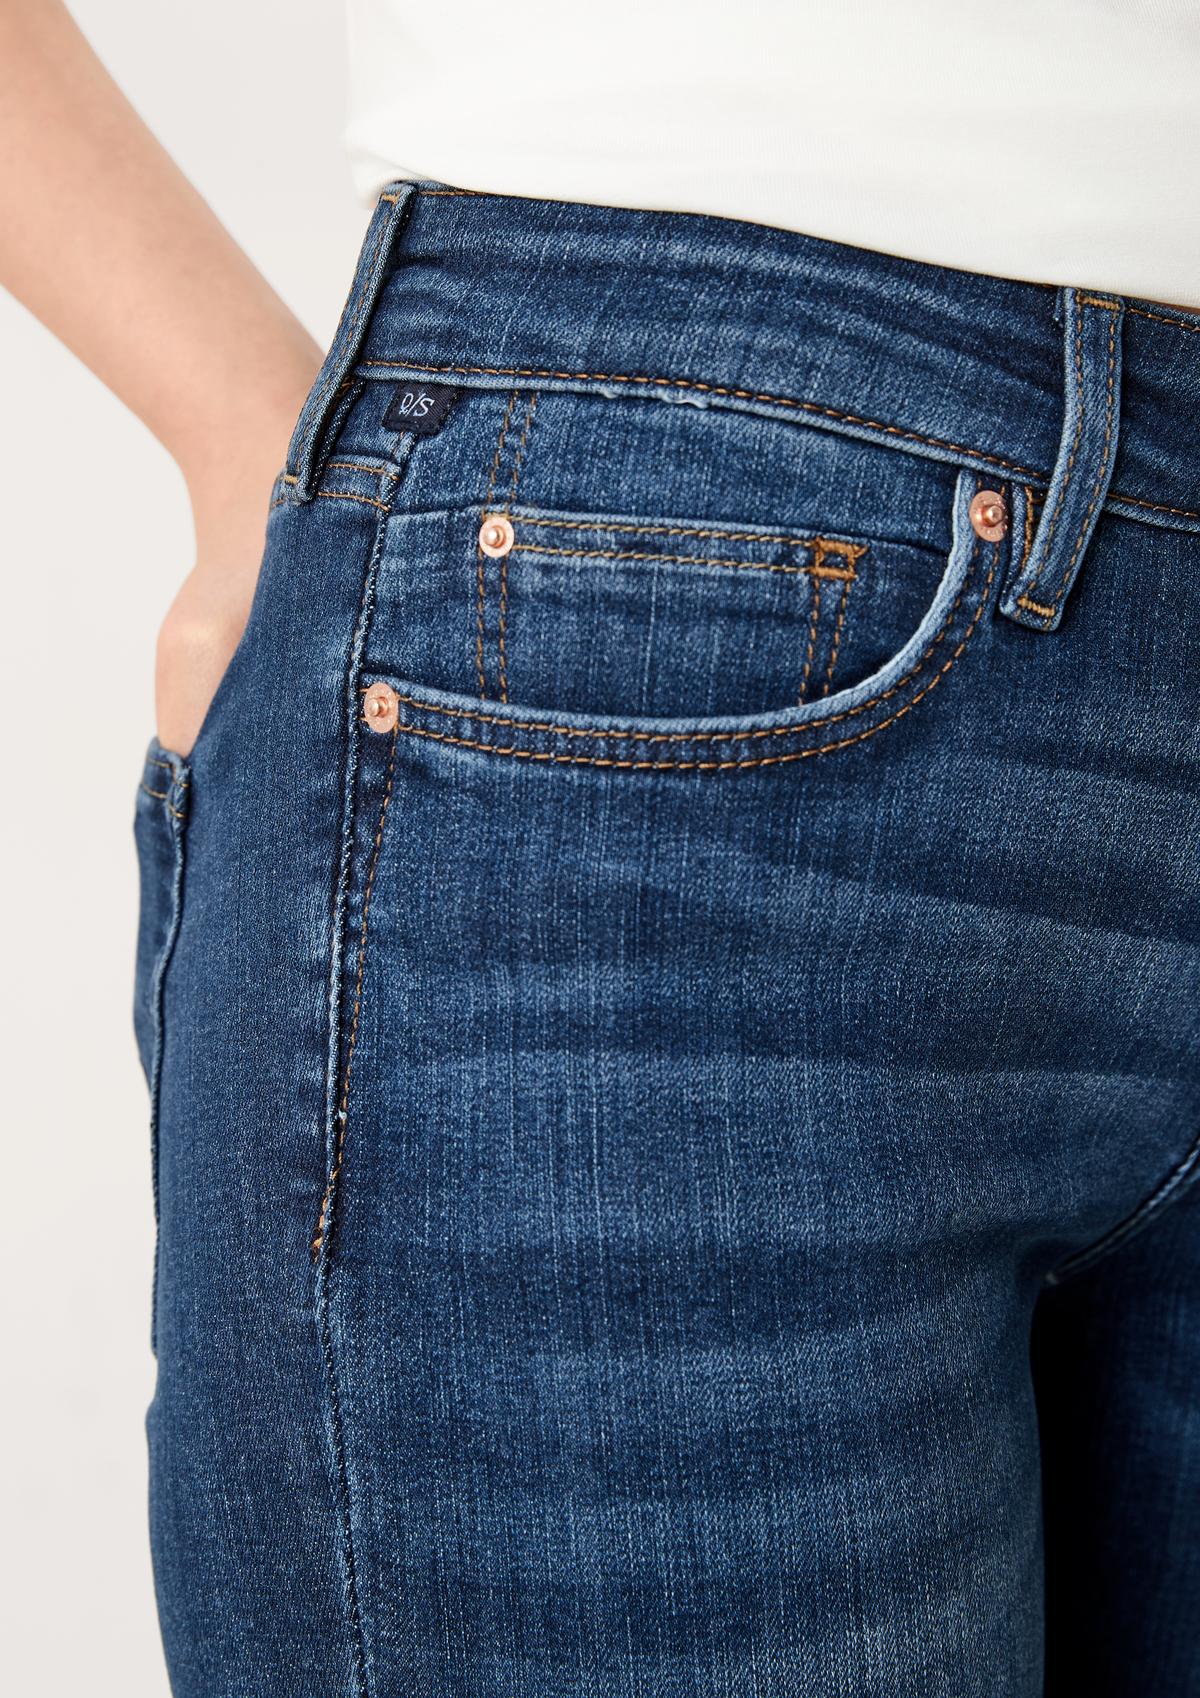 s.Oliver Skinny: super skinny jeans